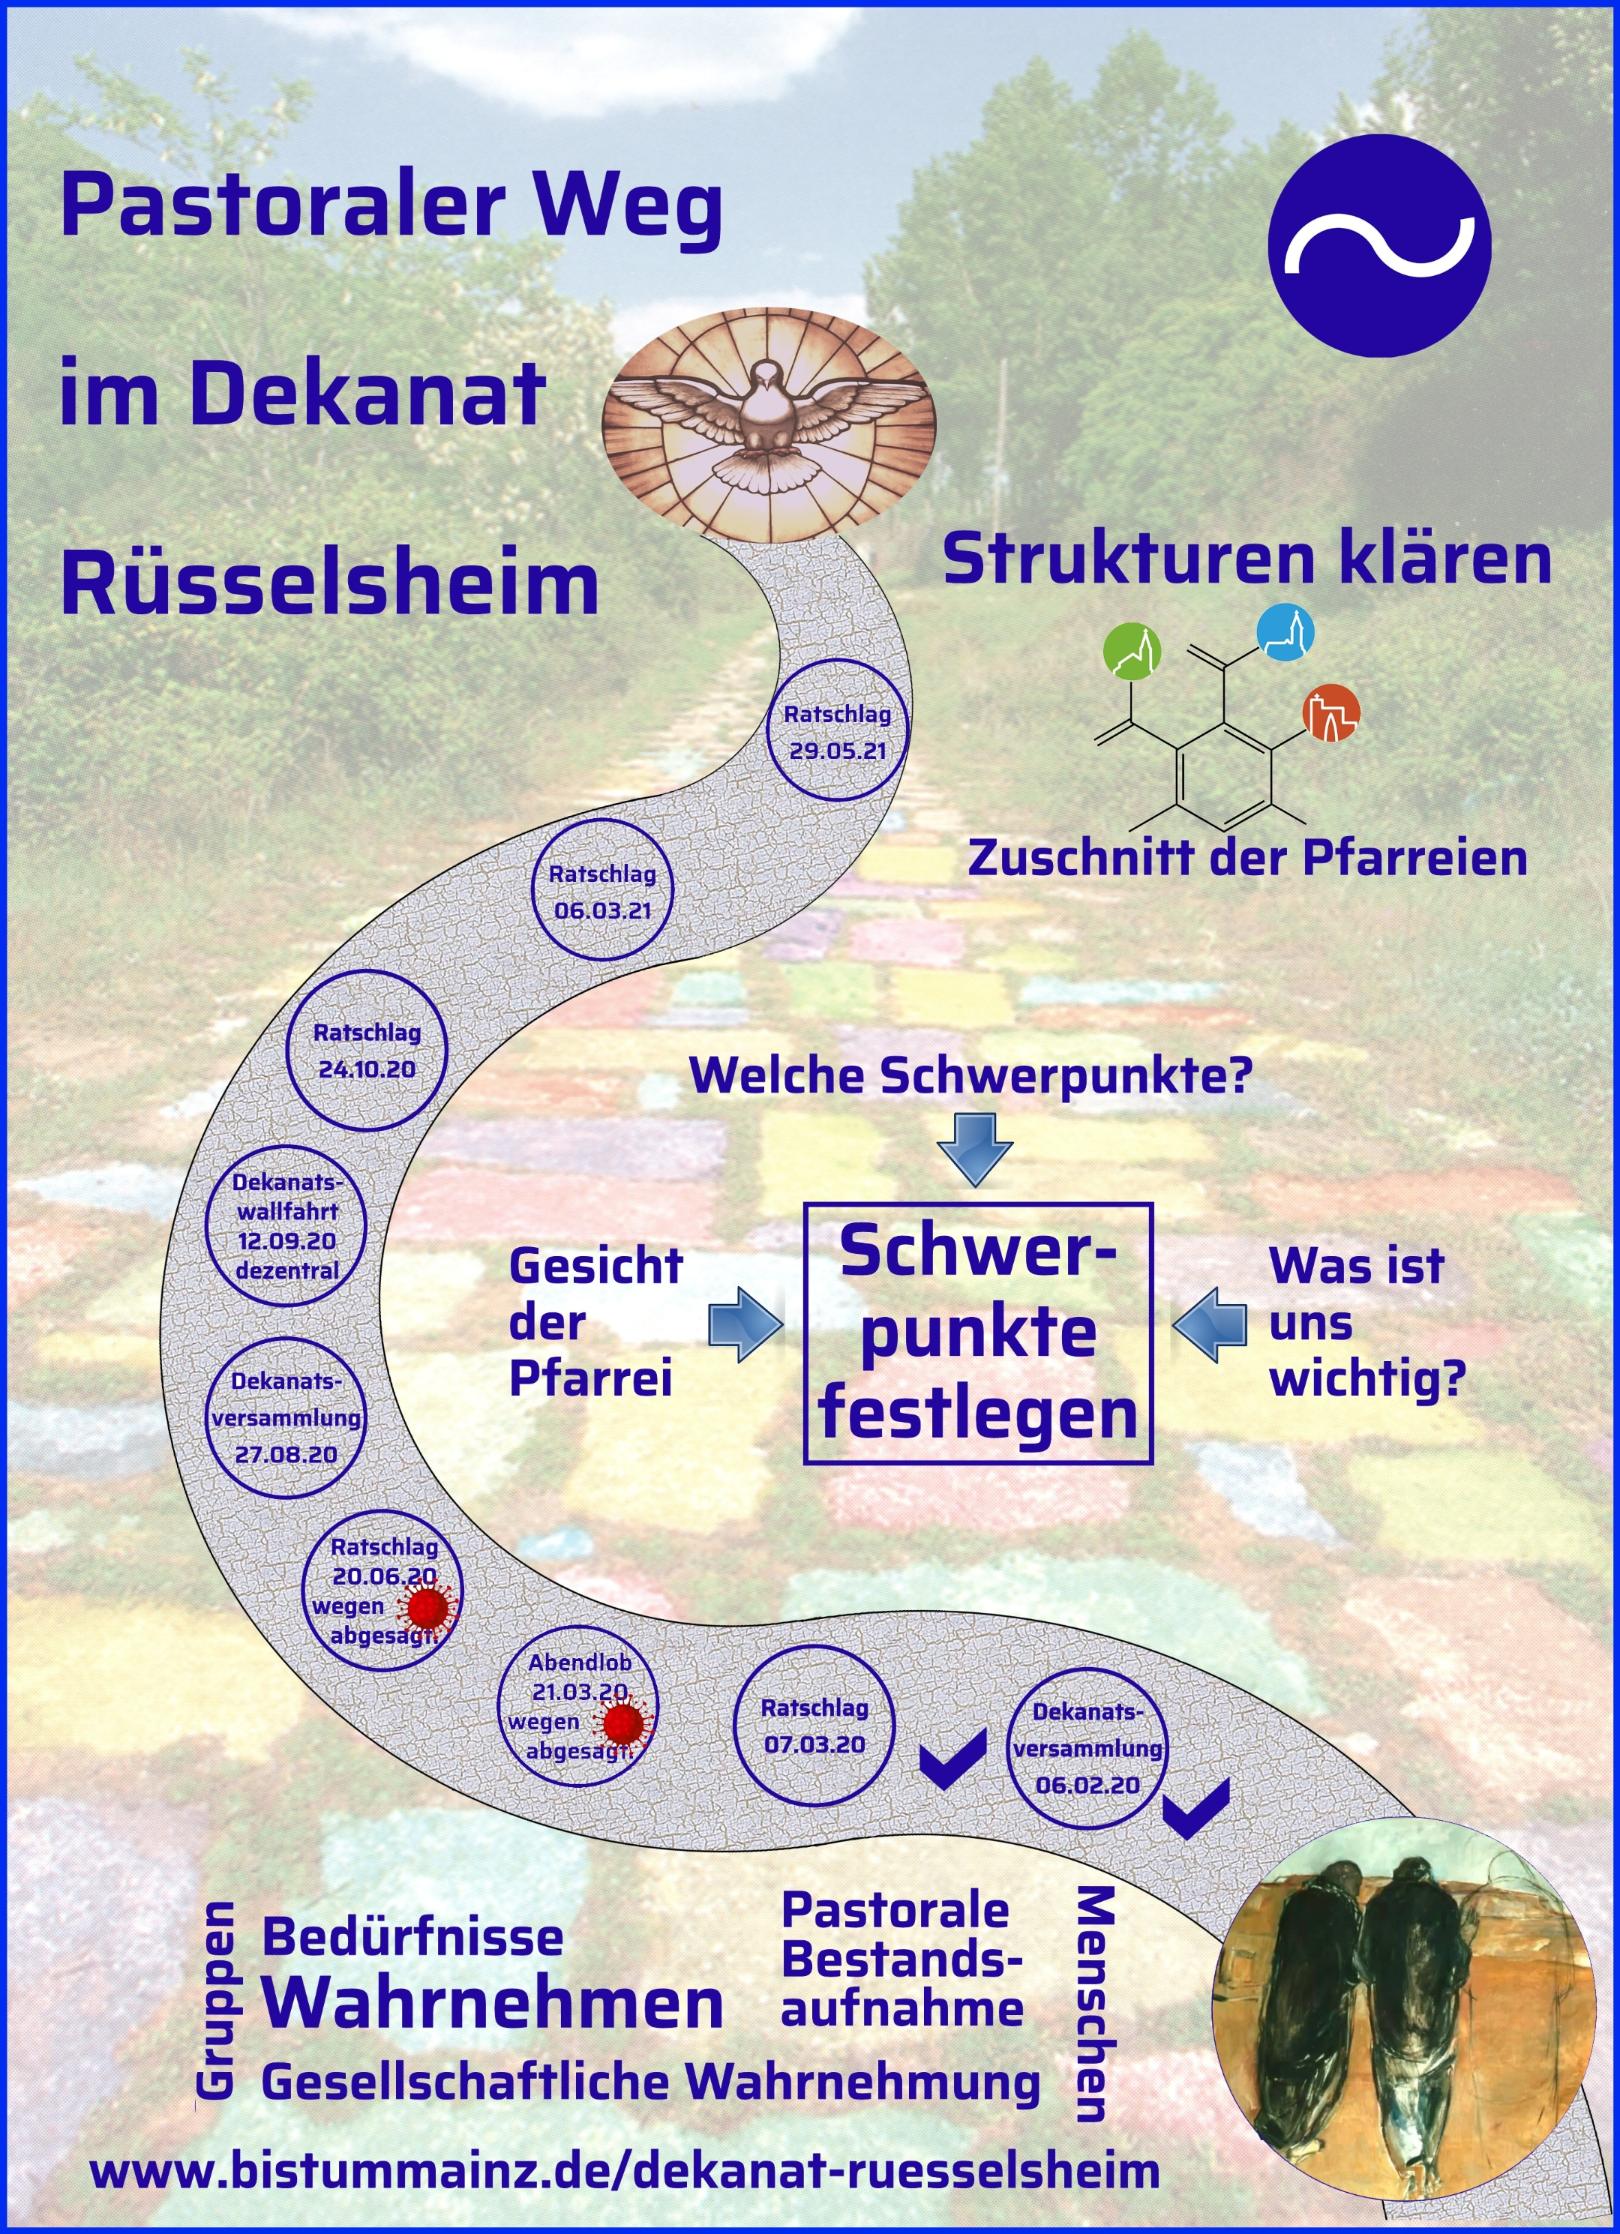 Pastoraler Weg Dekanat (c) Dekanat Rüsselsheim